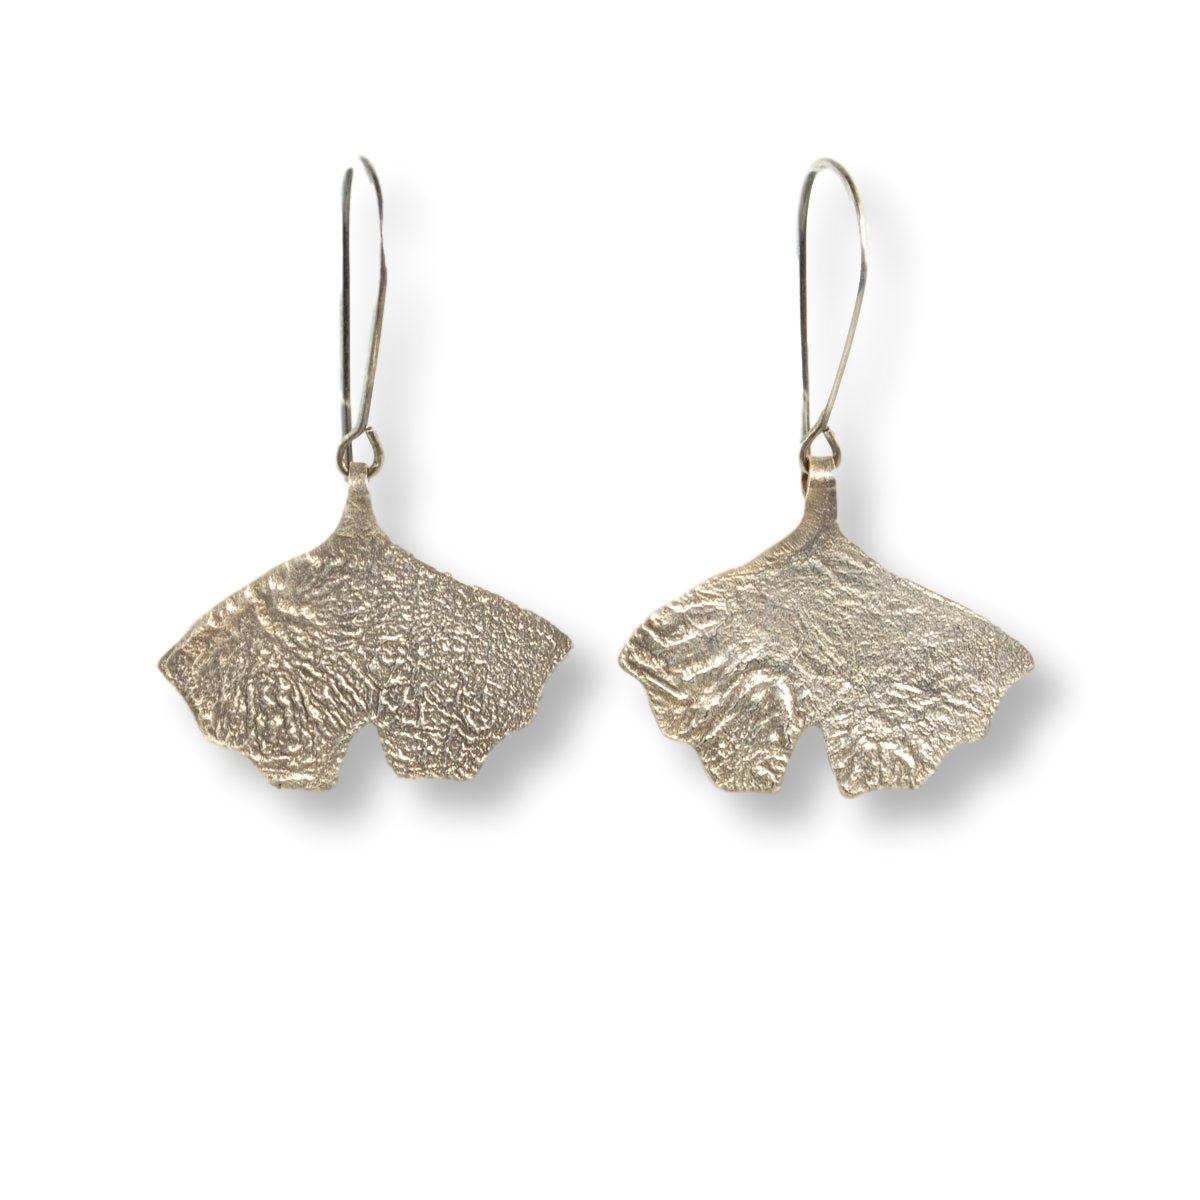 Silver ginko leaf earrings